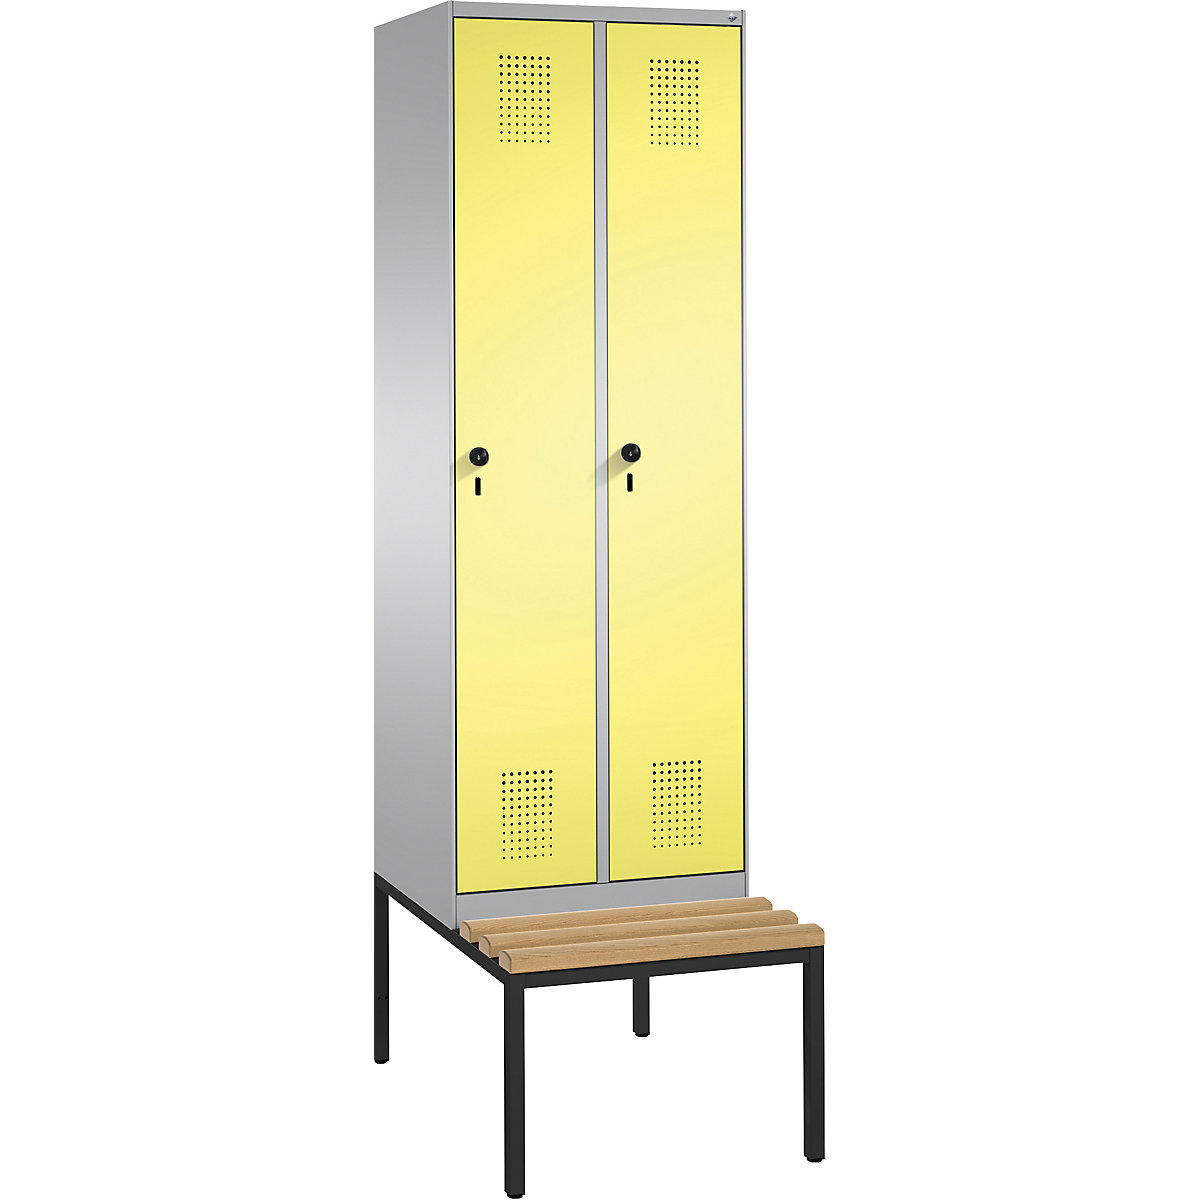 Garderobna omara EVOLO, s klopjo – C+P, 2 razdelka, širina razdelka 300 mm, bela aluminijasta / žvepleno rumena-12